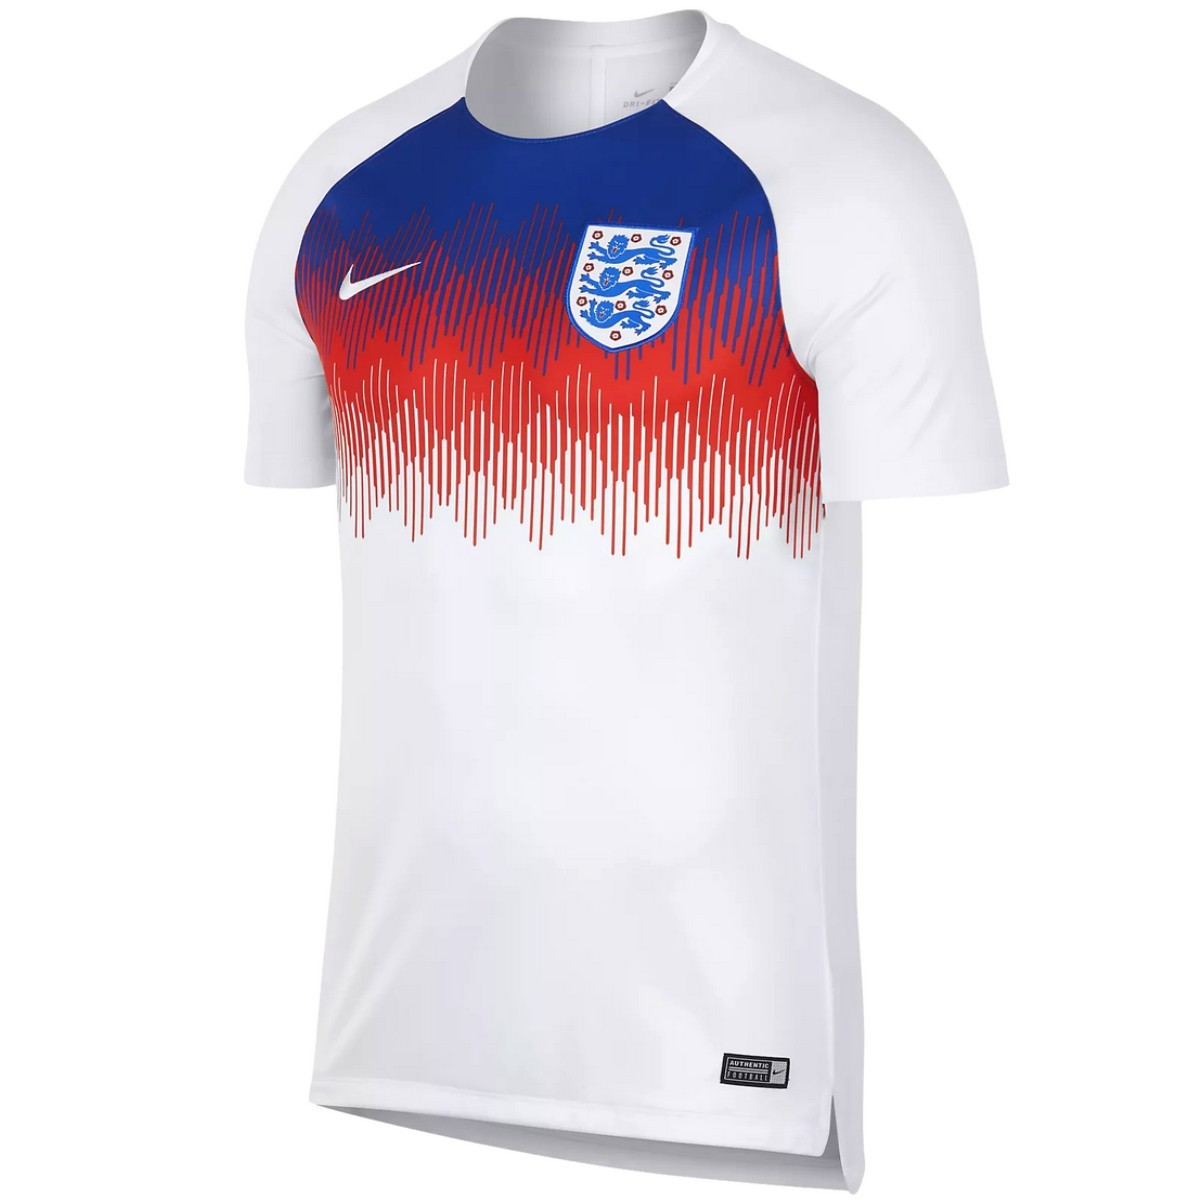 daar ben ik het mee eens Dominant Verouderd England football pre-match training shirt 2018/19 - Nike